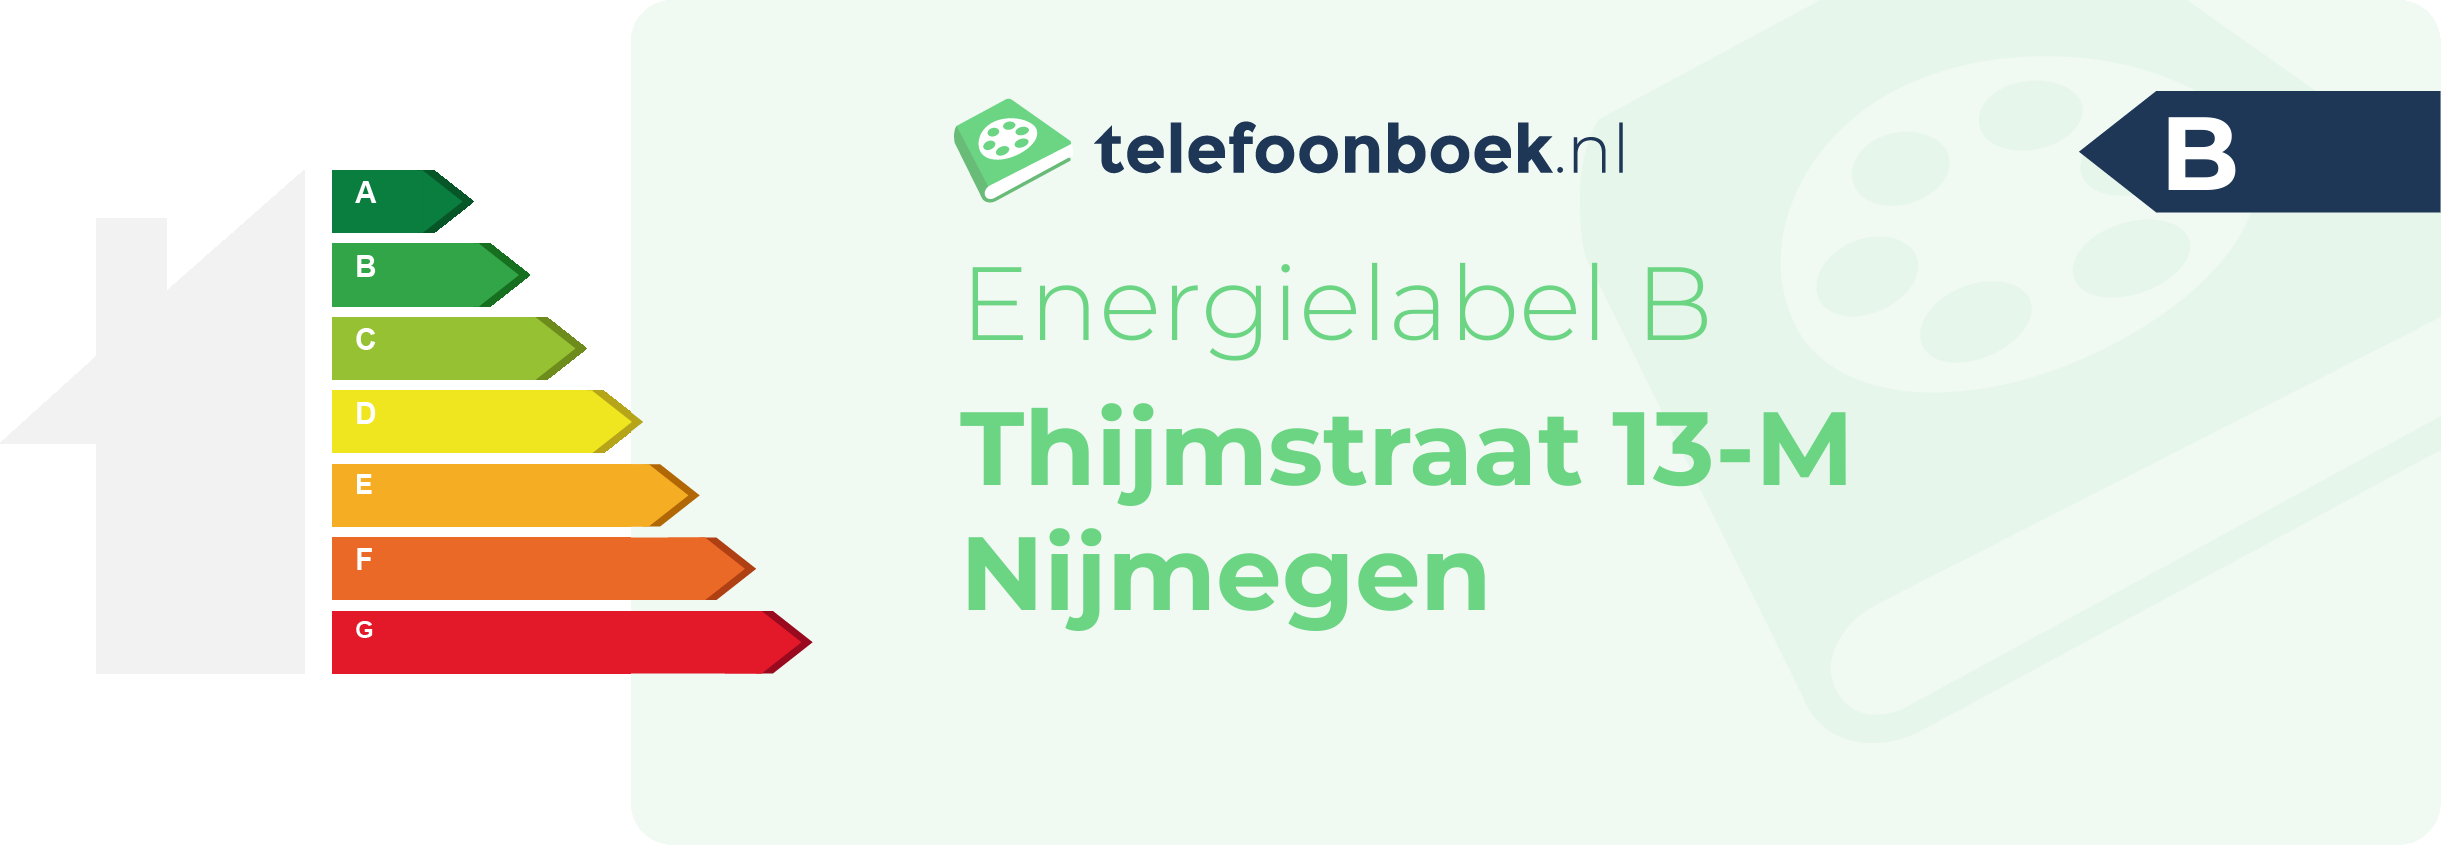 Energielabel Thijmstraat 13-M Nijmegen